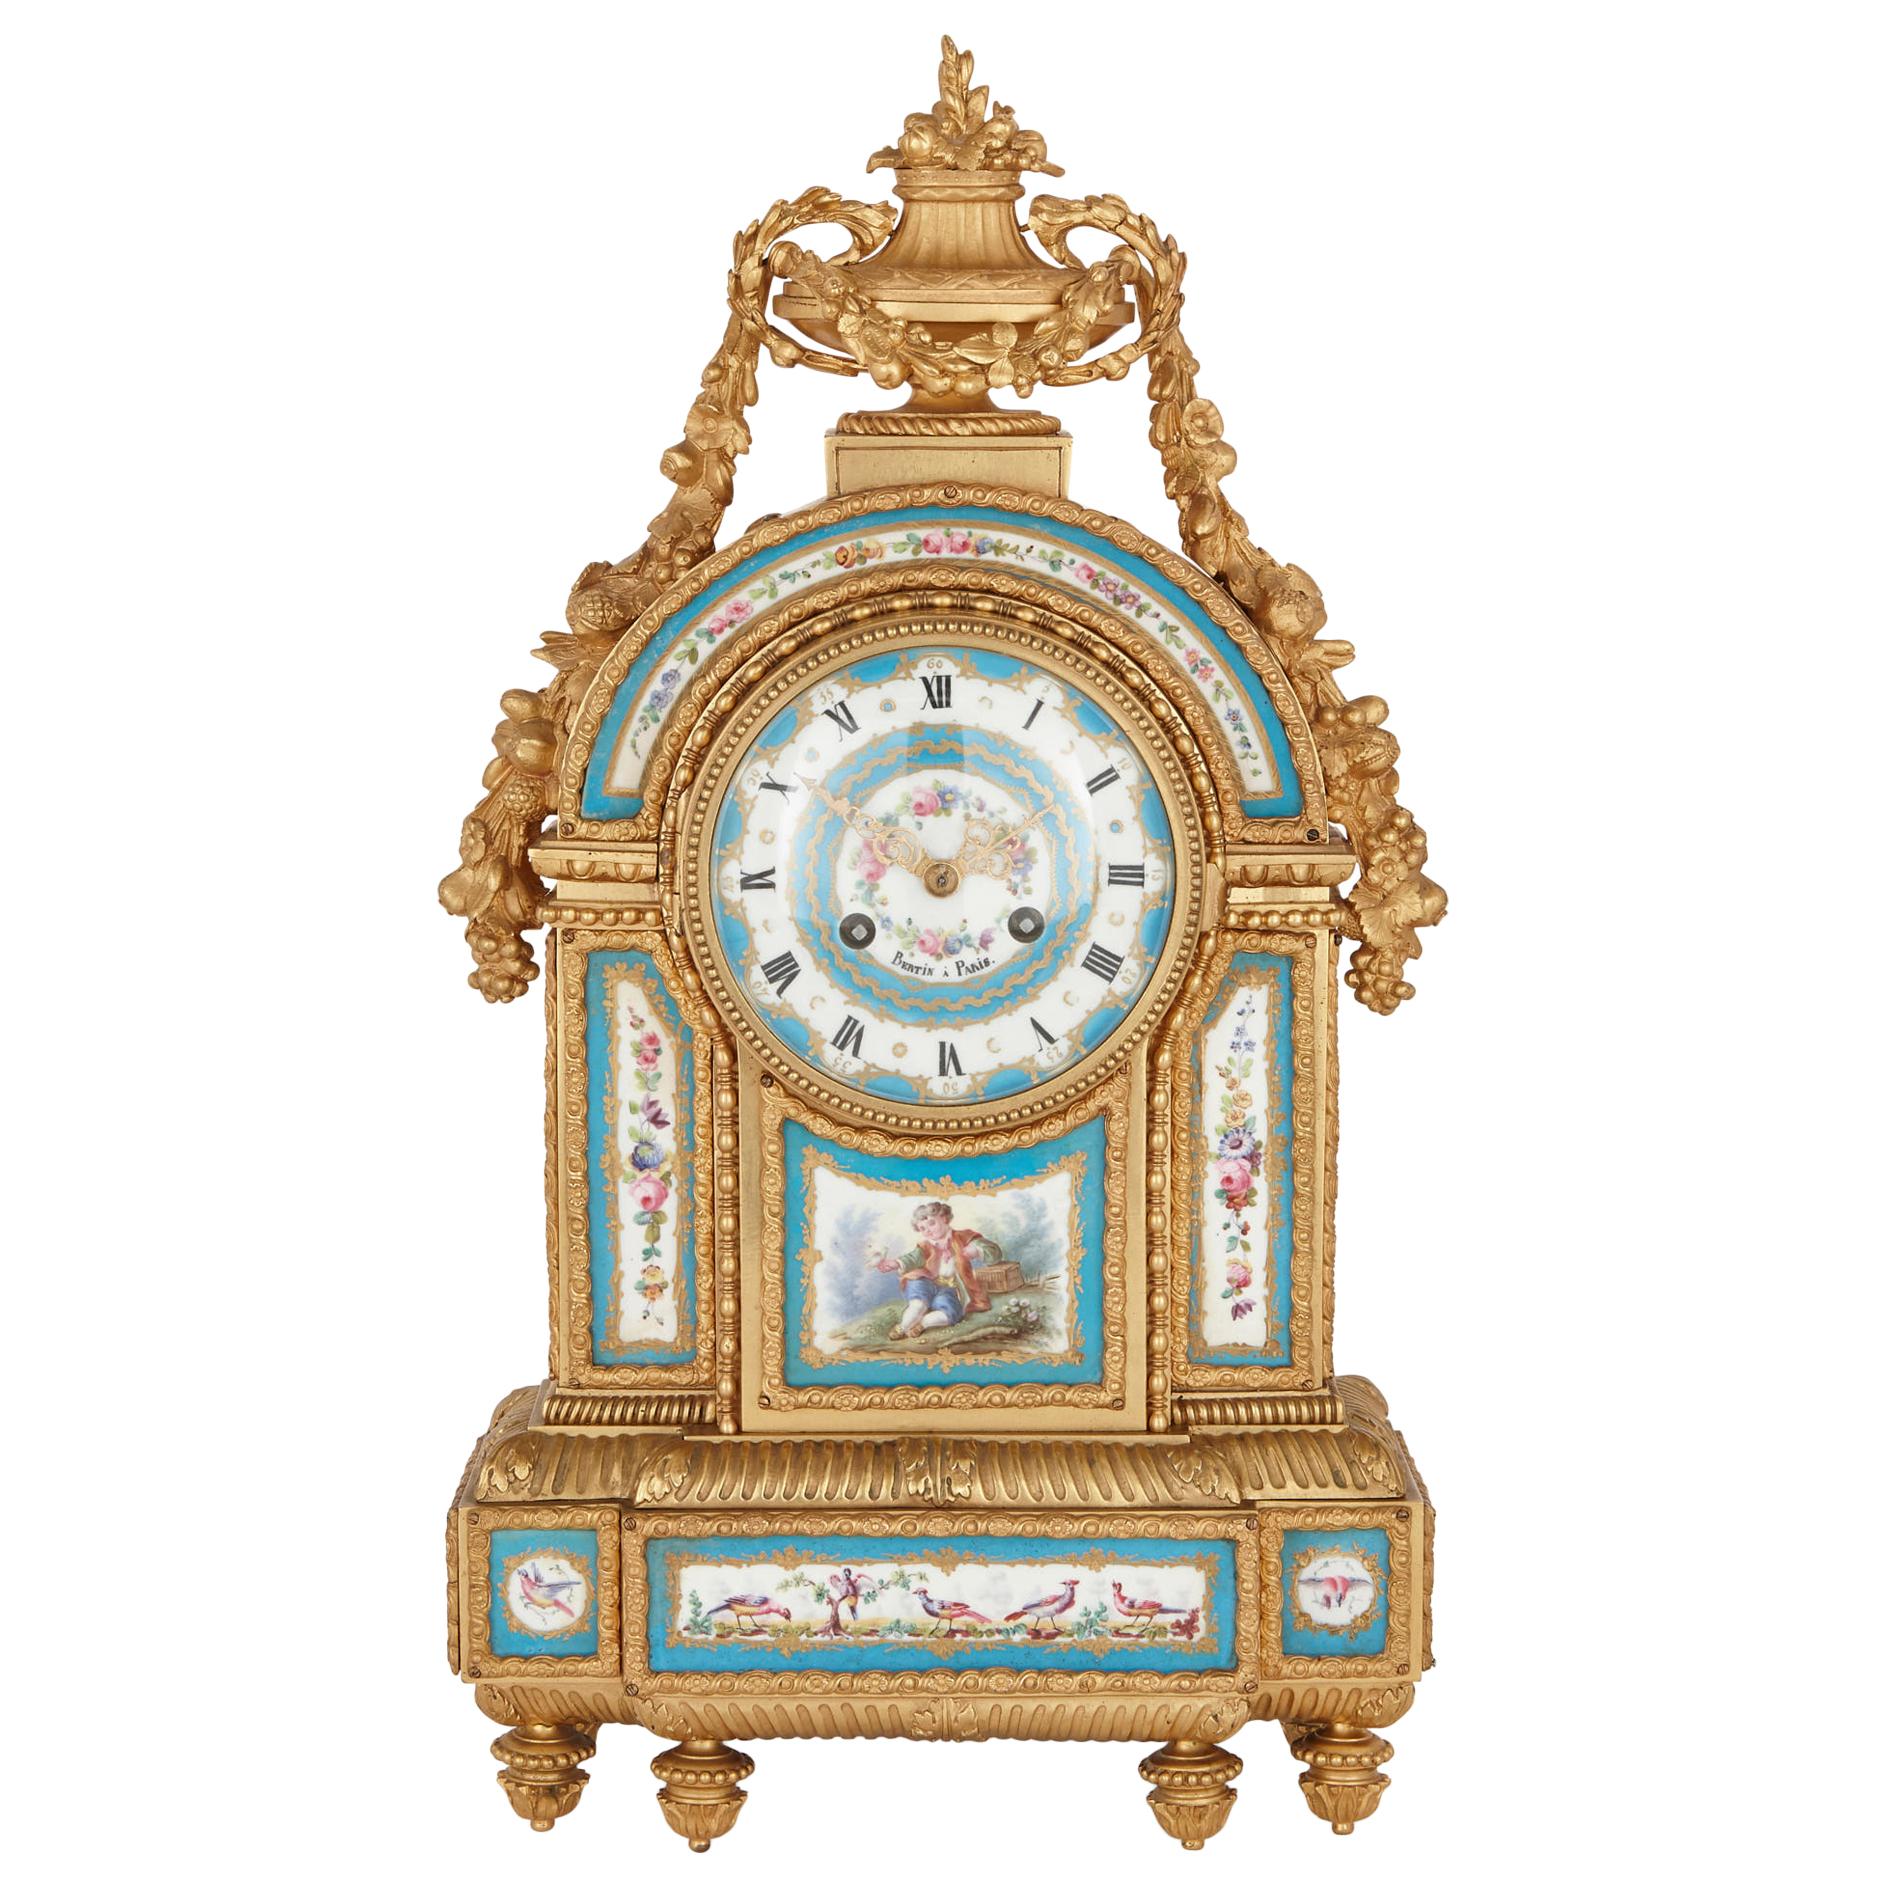 Sèvres Style Porcelain and Gilt Bronze Mantel Clock